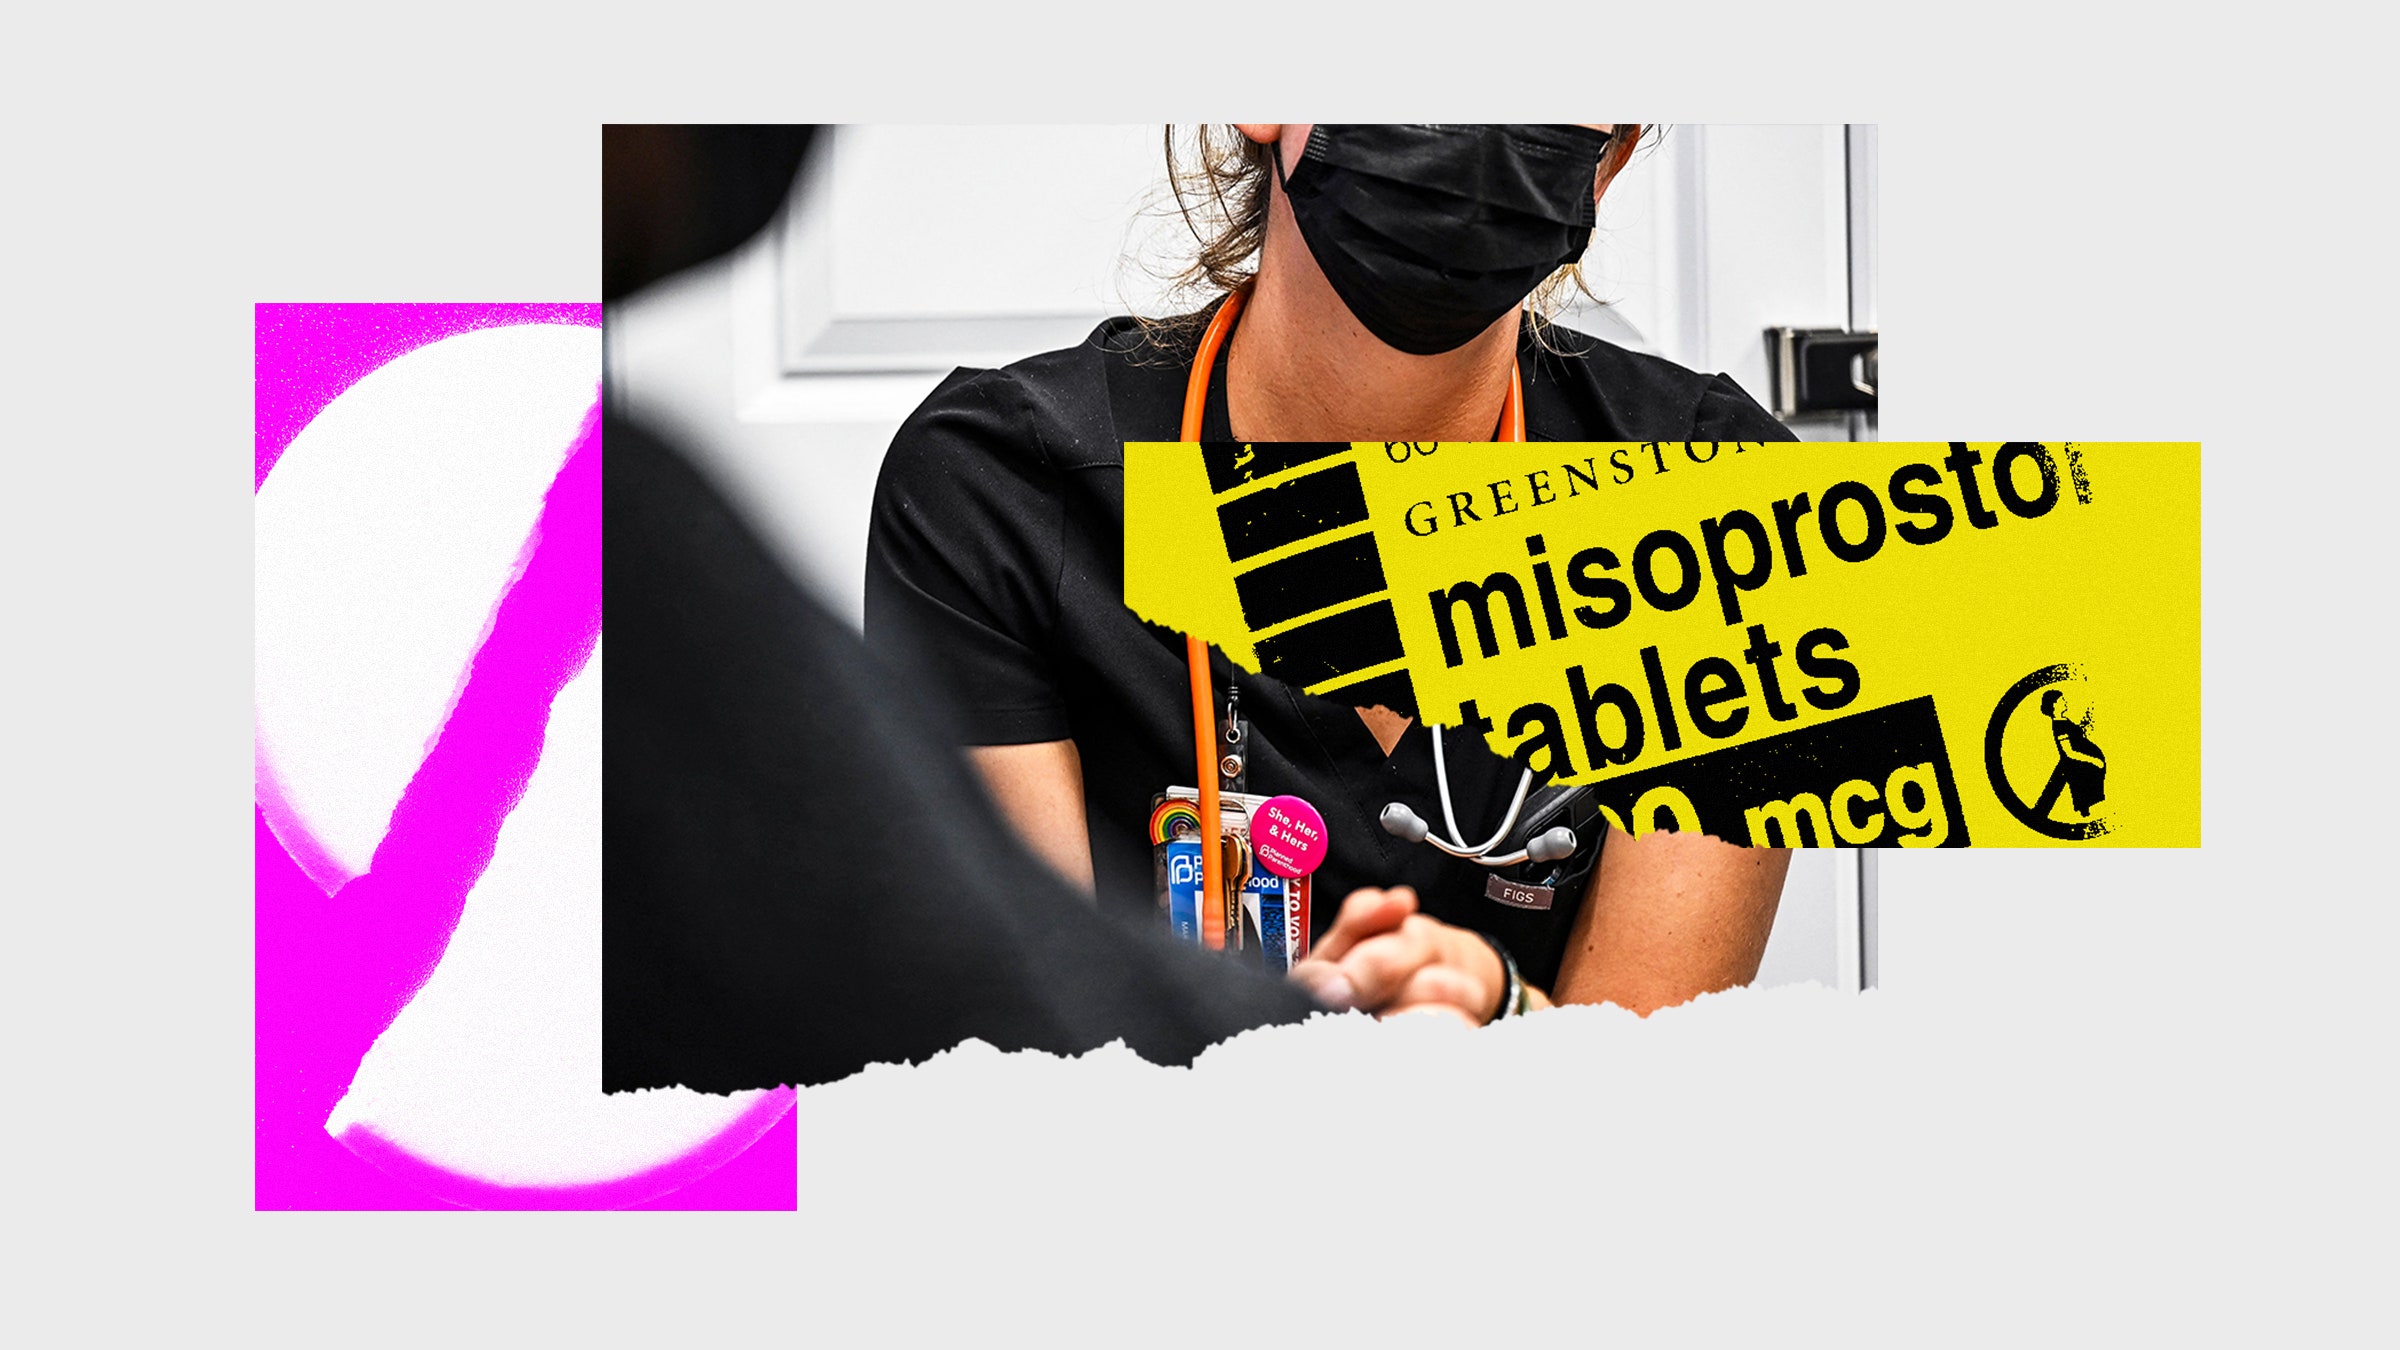 Colagem de fotos com a imagem de um trabalhador médico, quebrado ao meio, o comprimido e a etiqueta do misoprostol de drogas